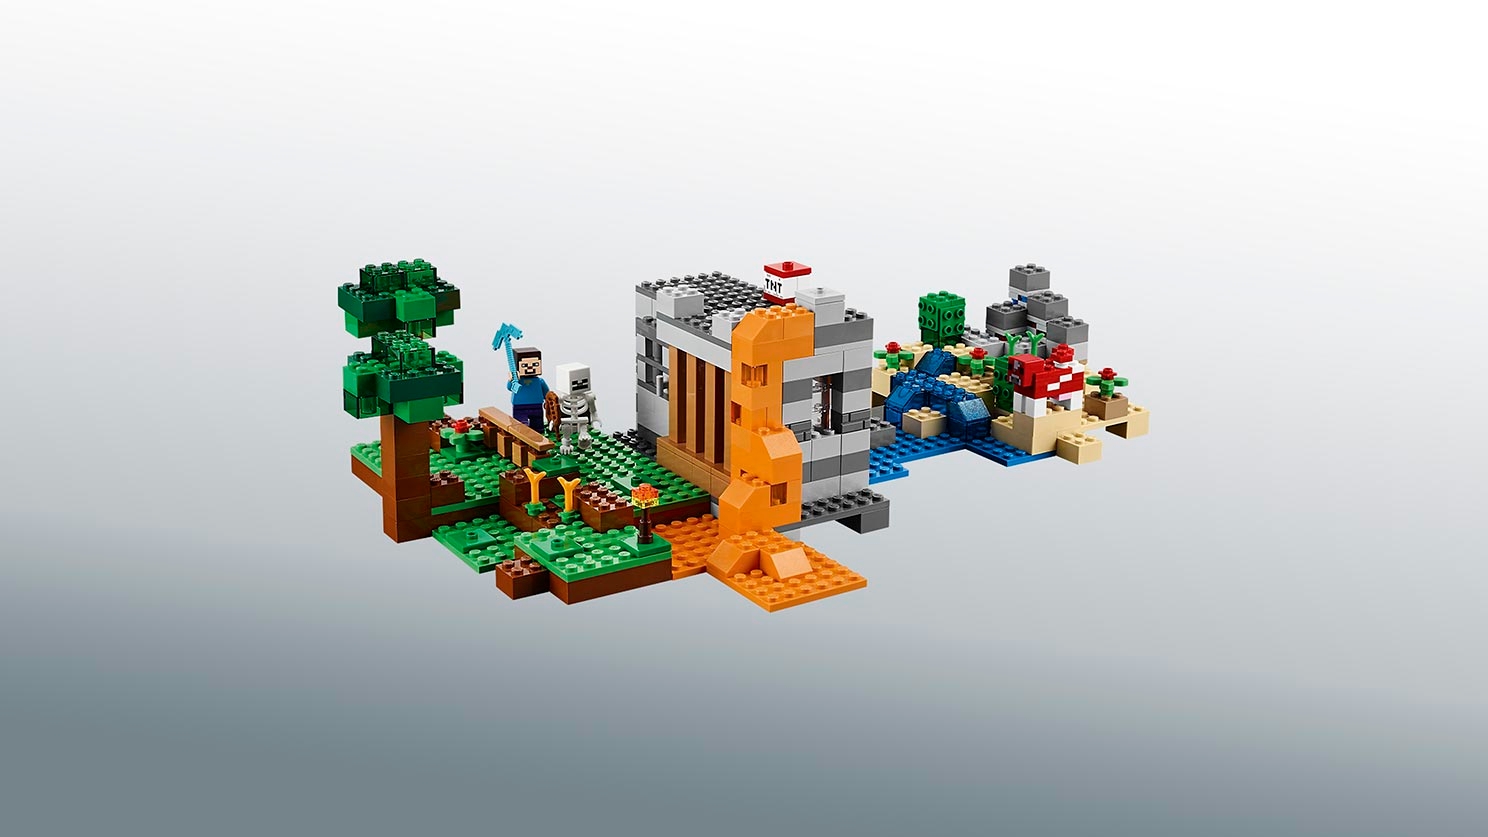 クラフトボックス 21116 - レゴ®マインクラフト セット - LEGO.comキッズ